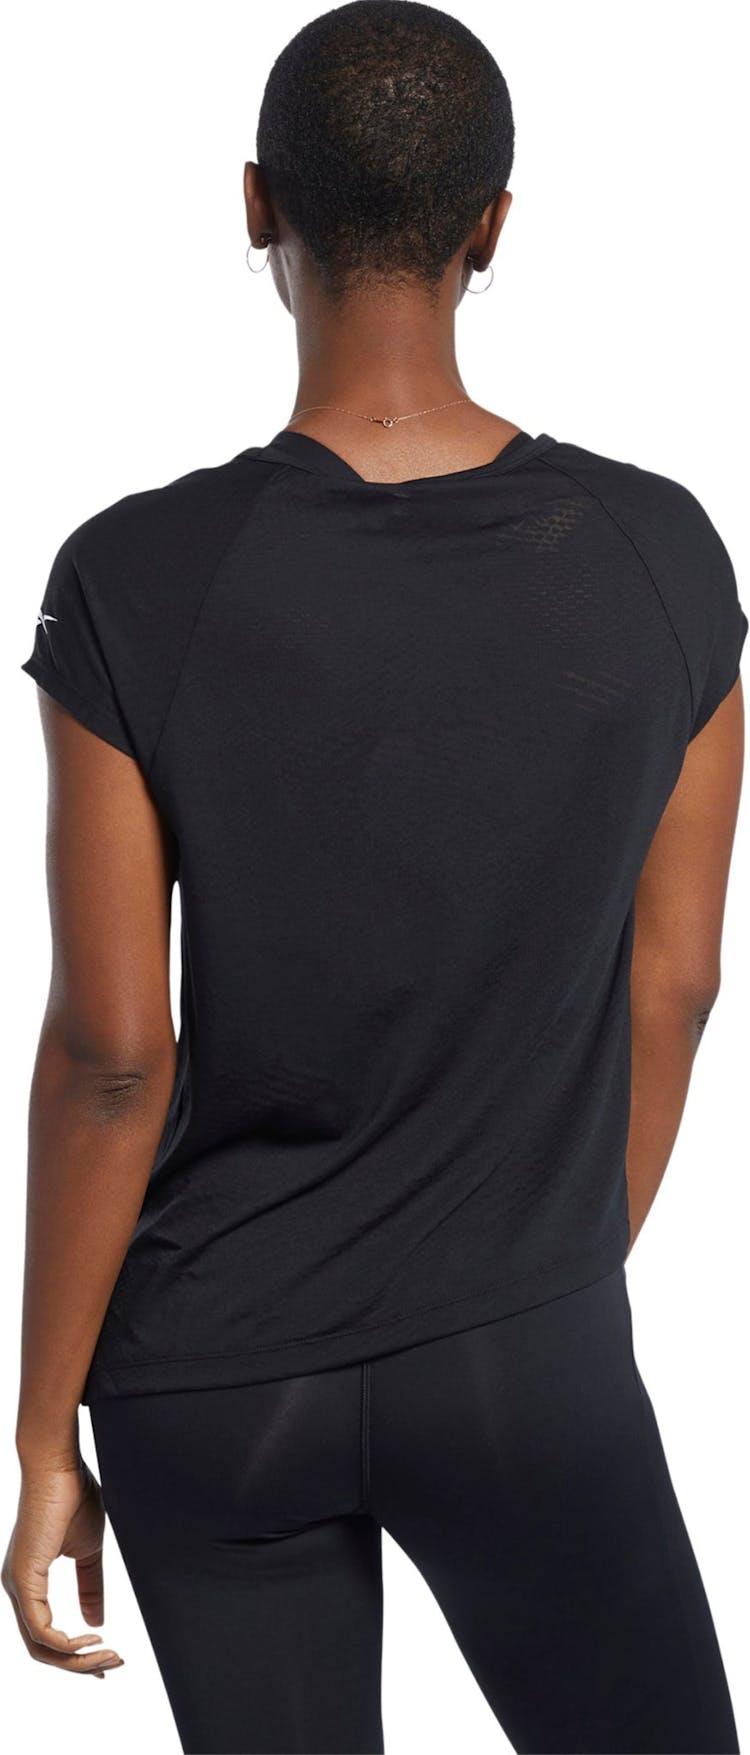 Numéro de l'image de la galerie de produits 2 pour le produit T-shirt Burnout - Femme